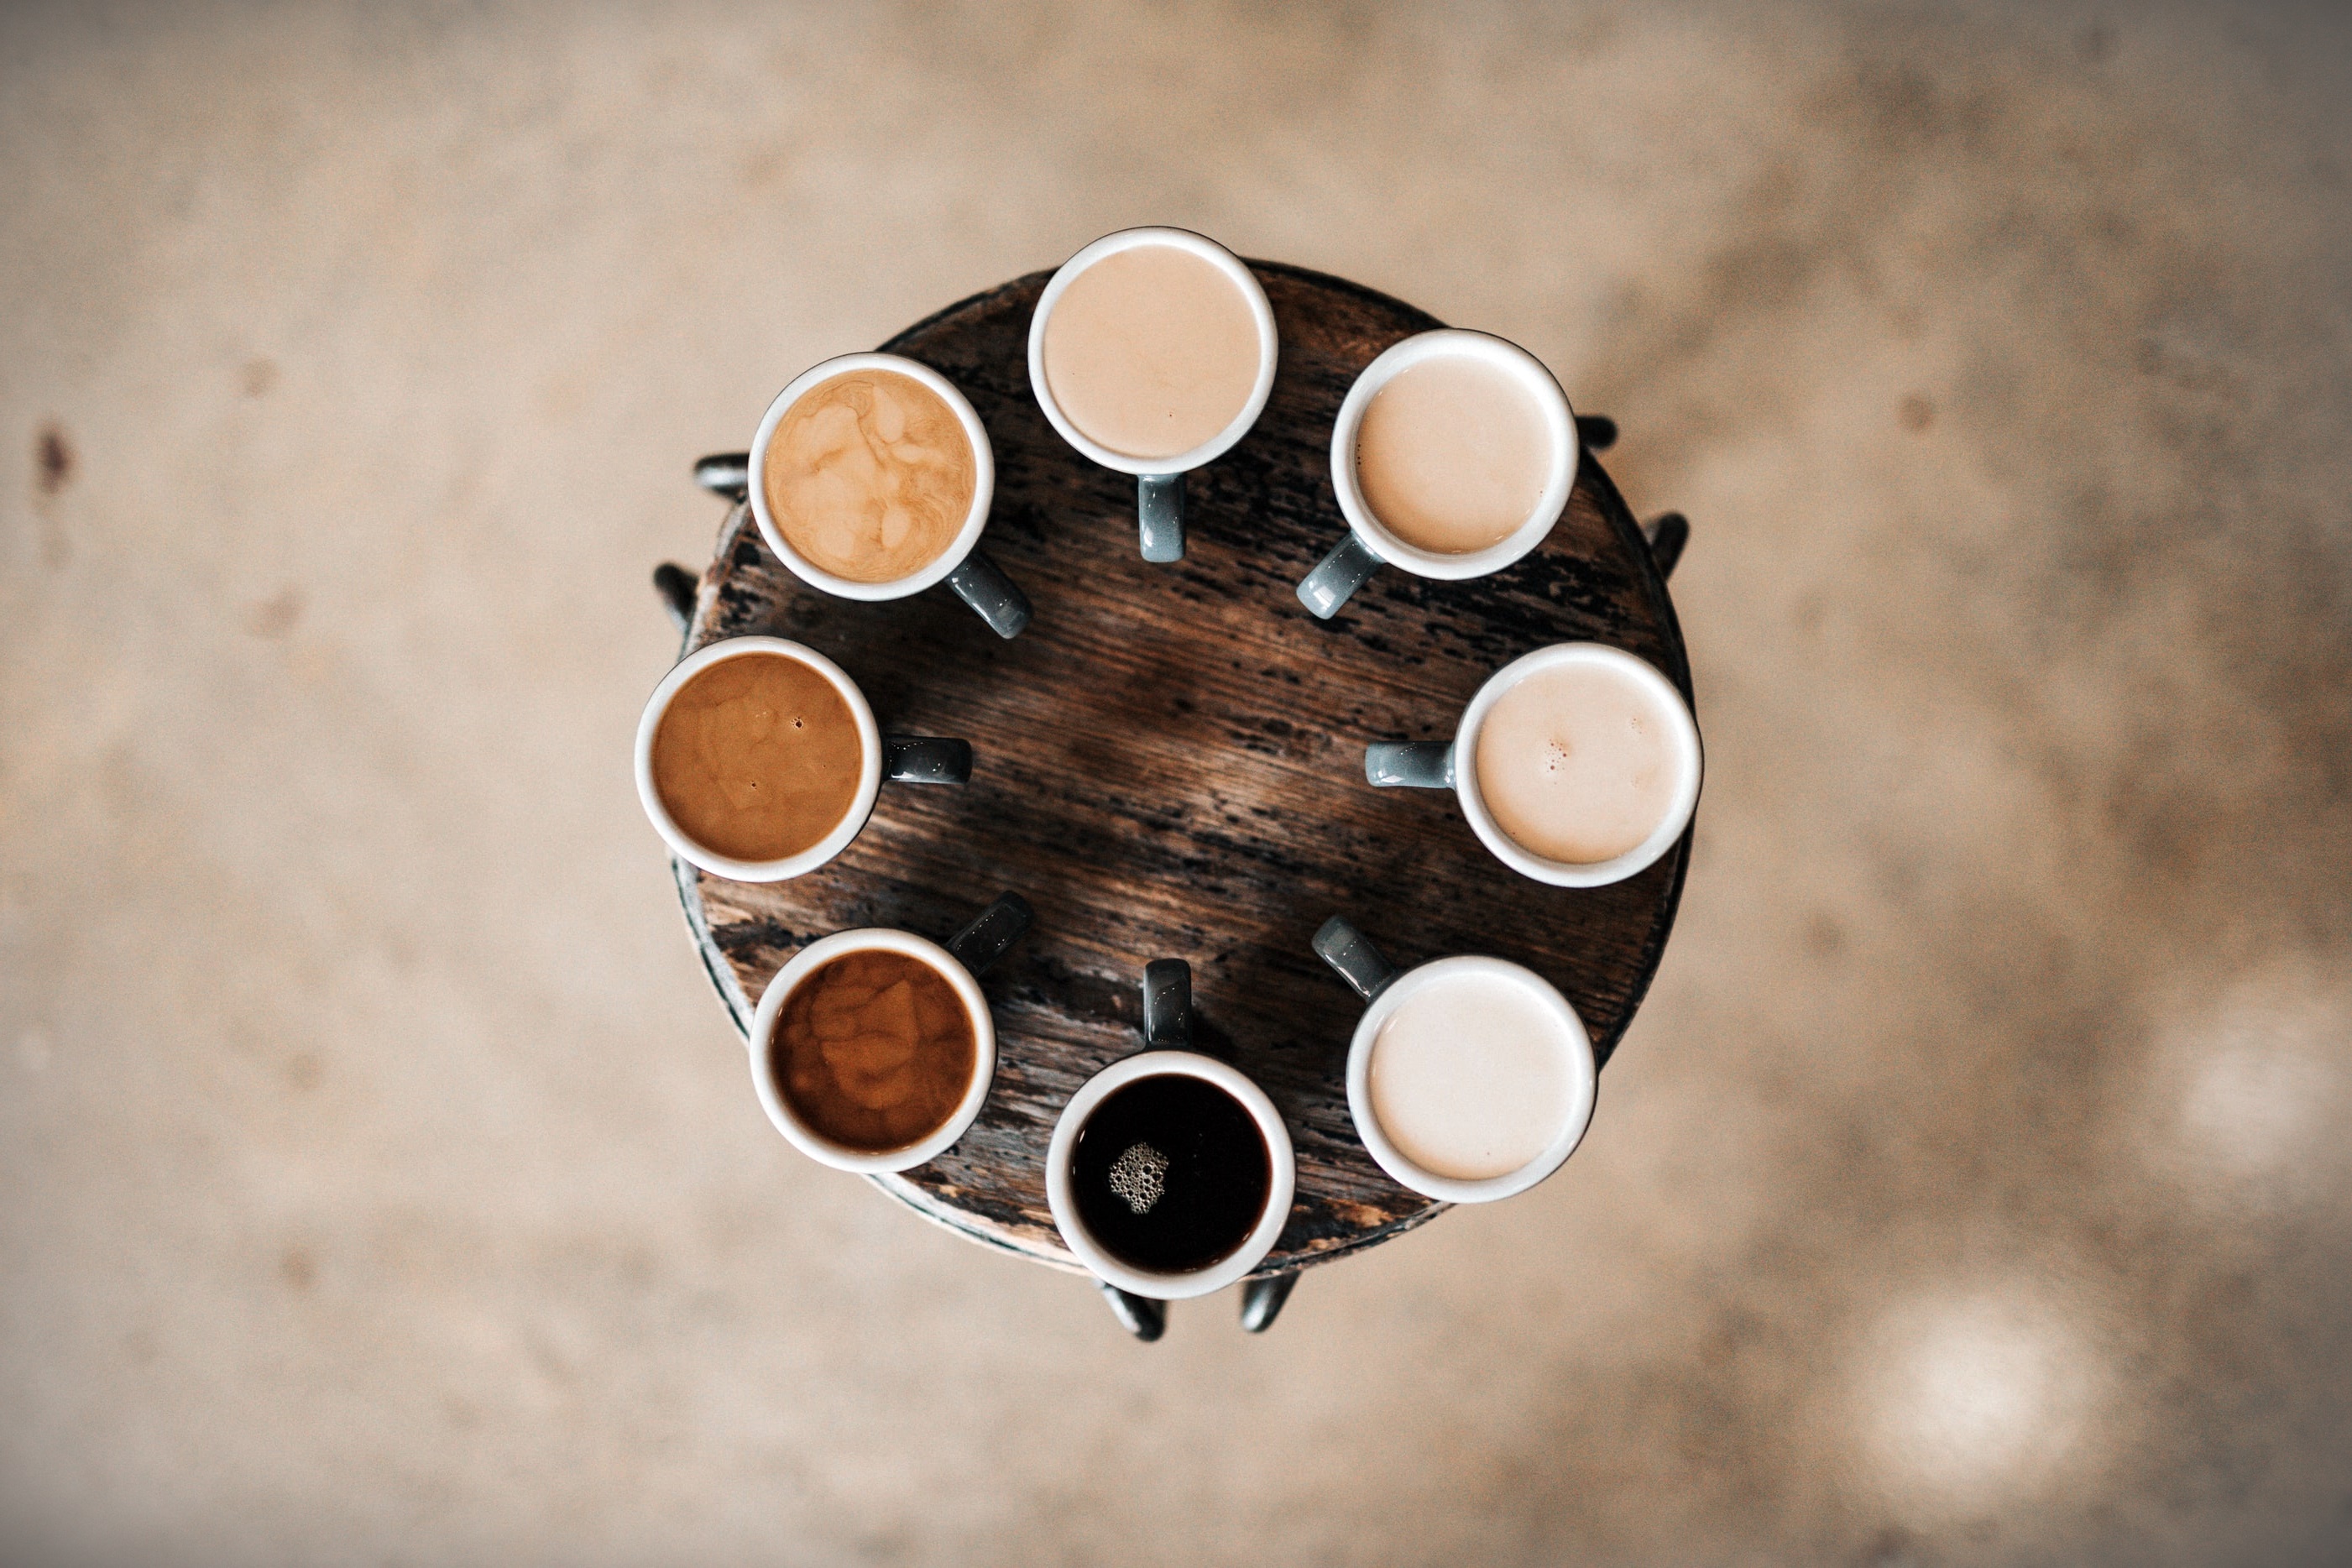 PRZEPISY: 29 września - Międzynarodowy Dzień Kawy